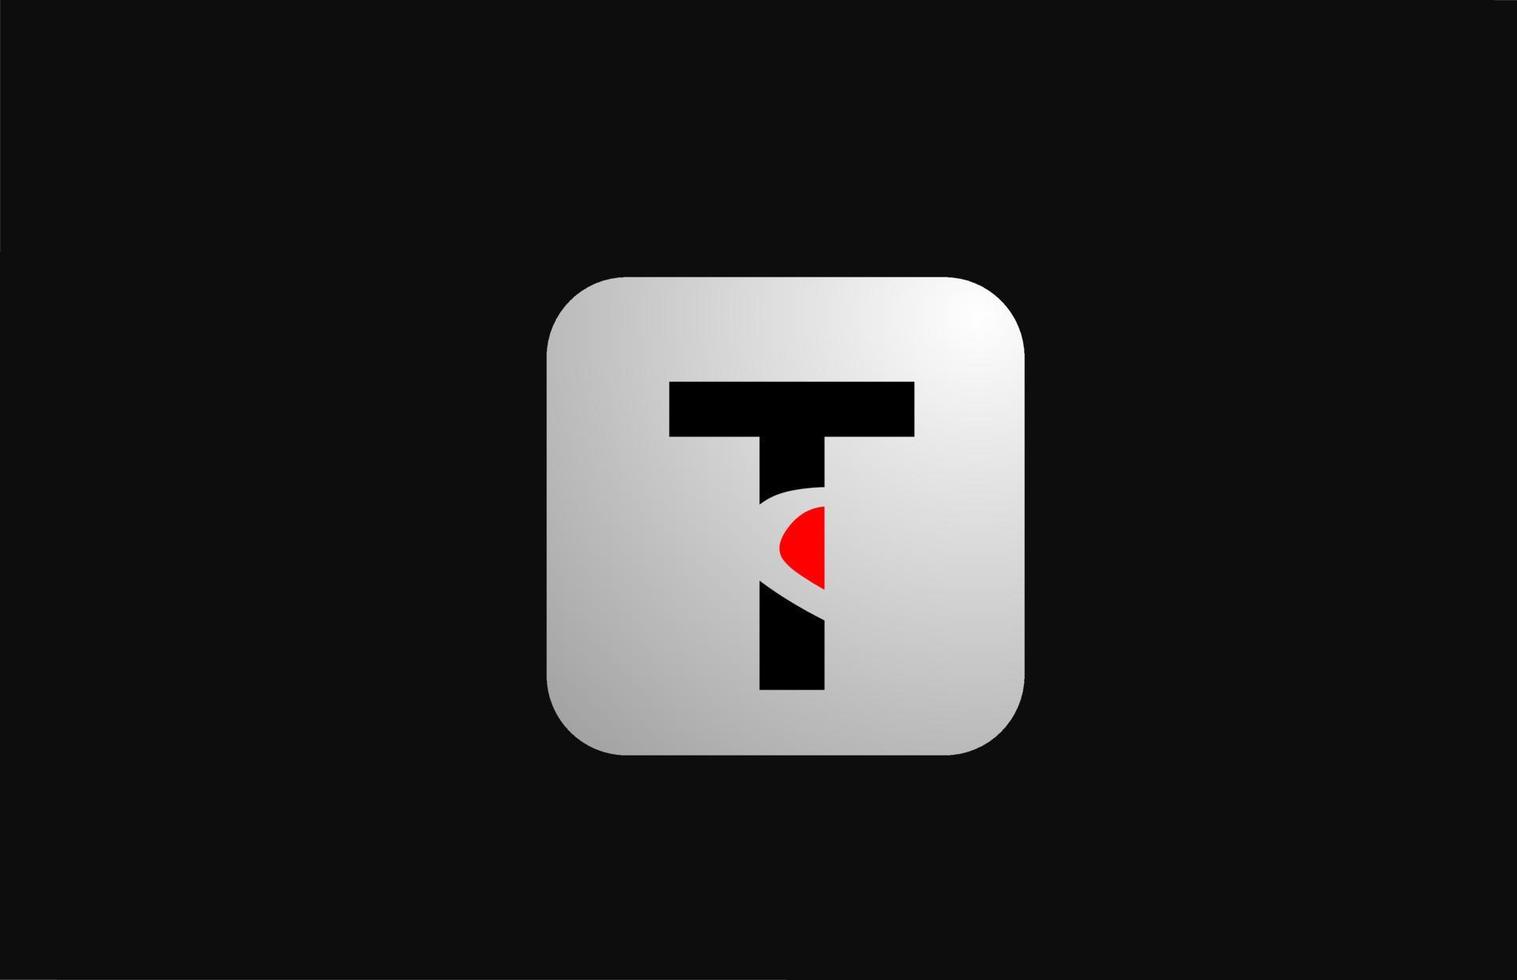 t alfabet letterpictogram logo voor bedrijf en bedrijf met eenvoudig zwart-wit ontwerp vector